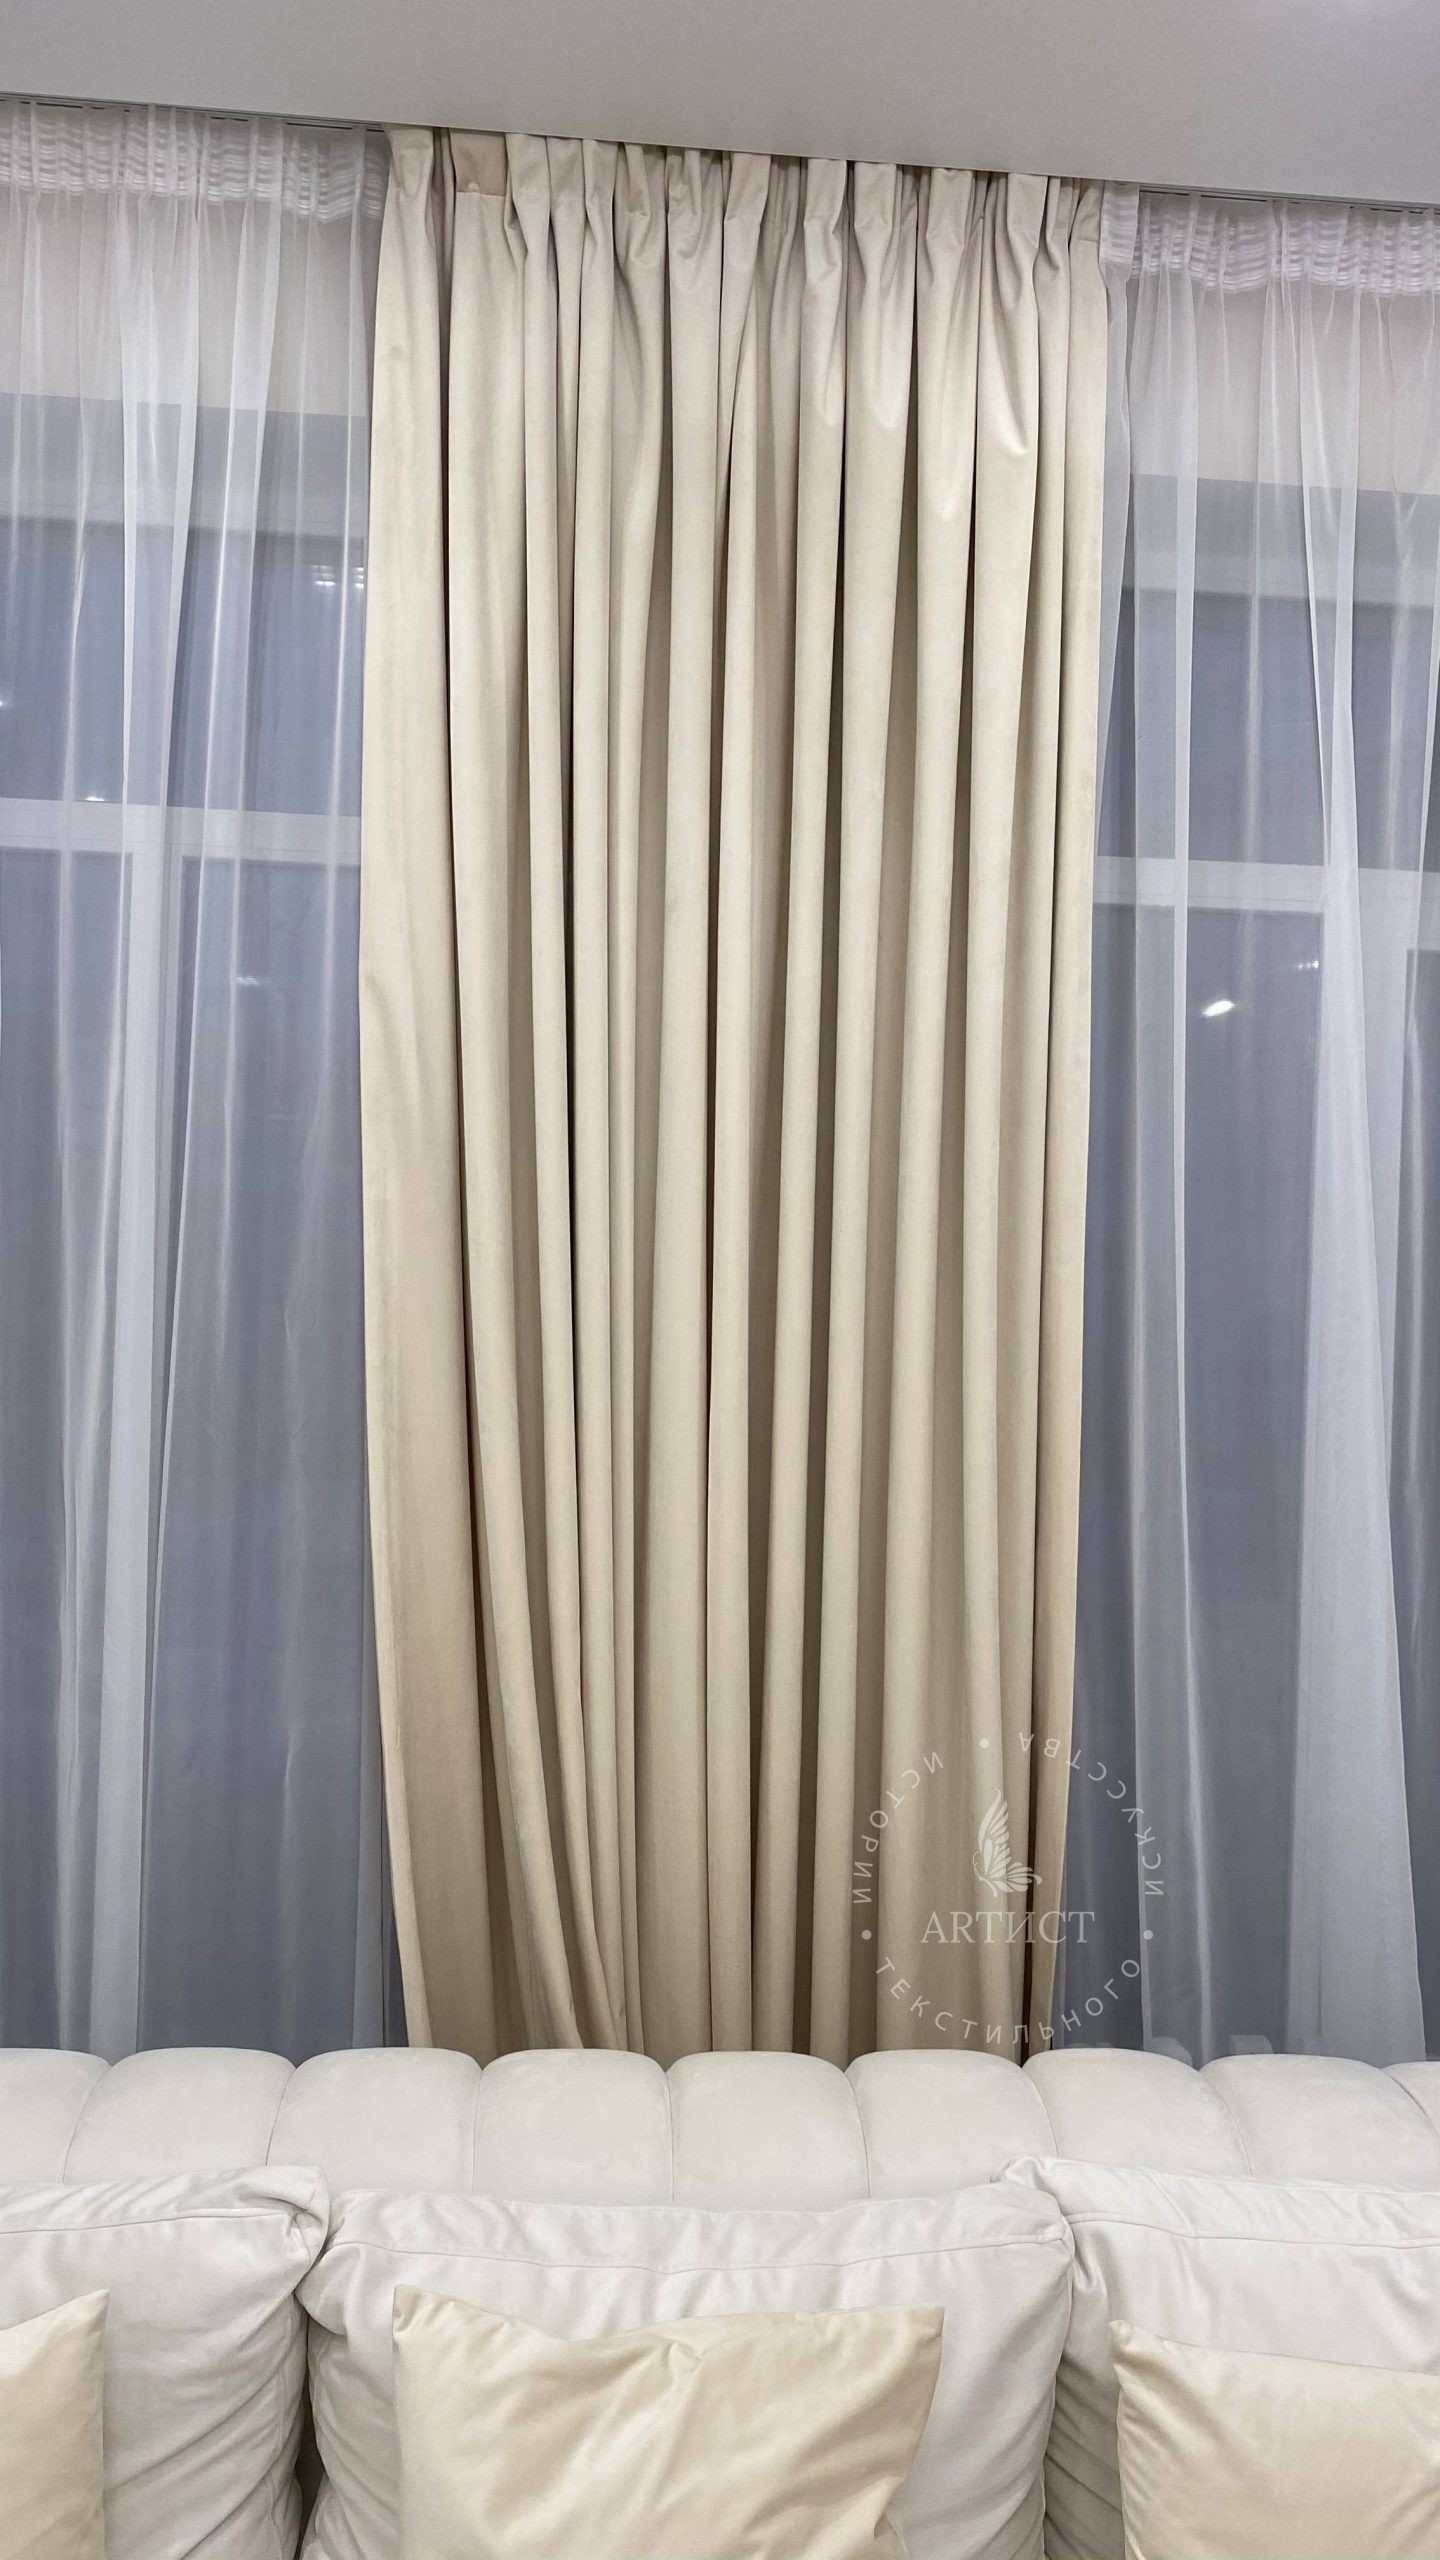 Нежные бархатные шторы на подкладке в гостиной загородного дома - Артист